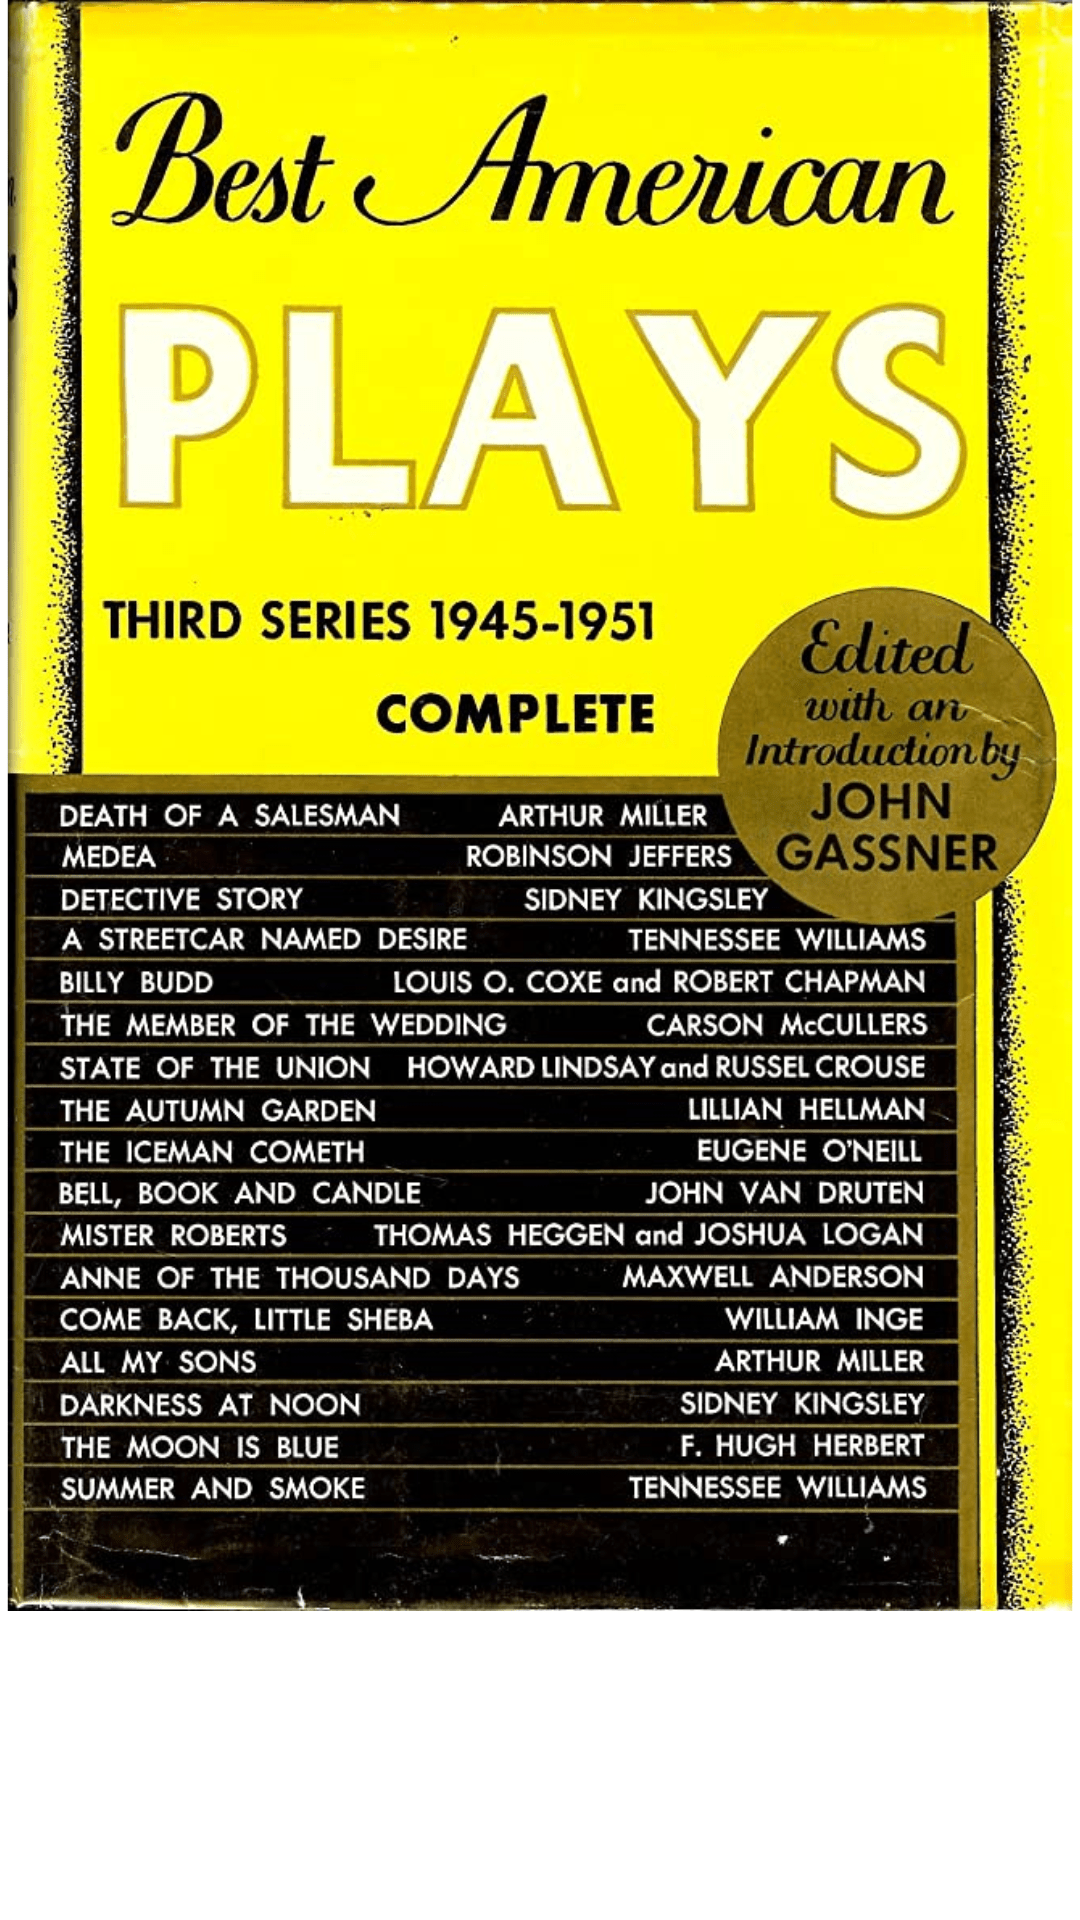 Best American Plays: Third Series, 1945-1951